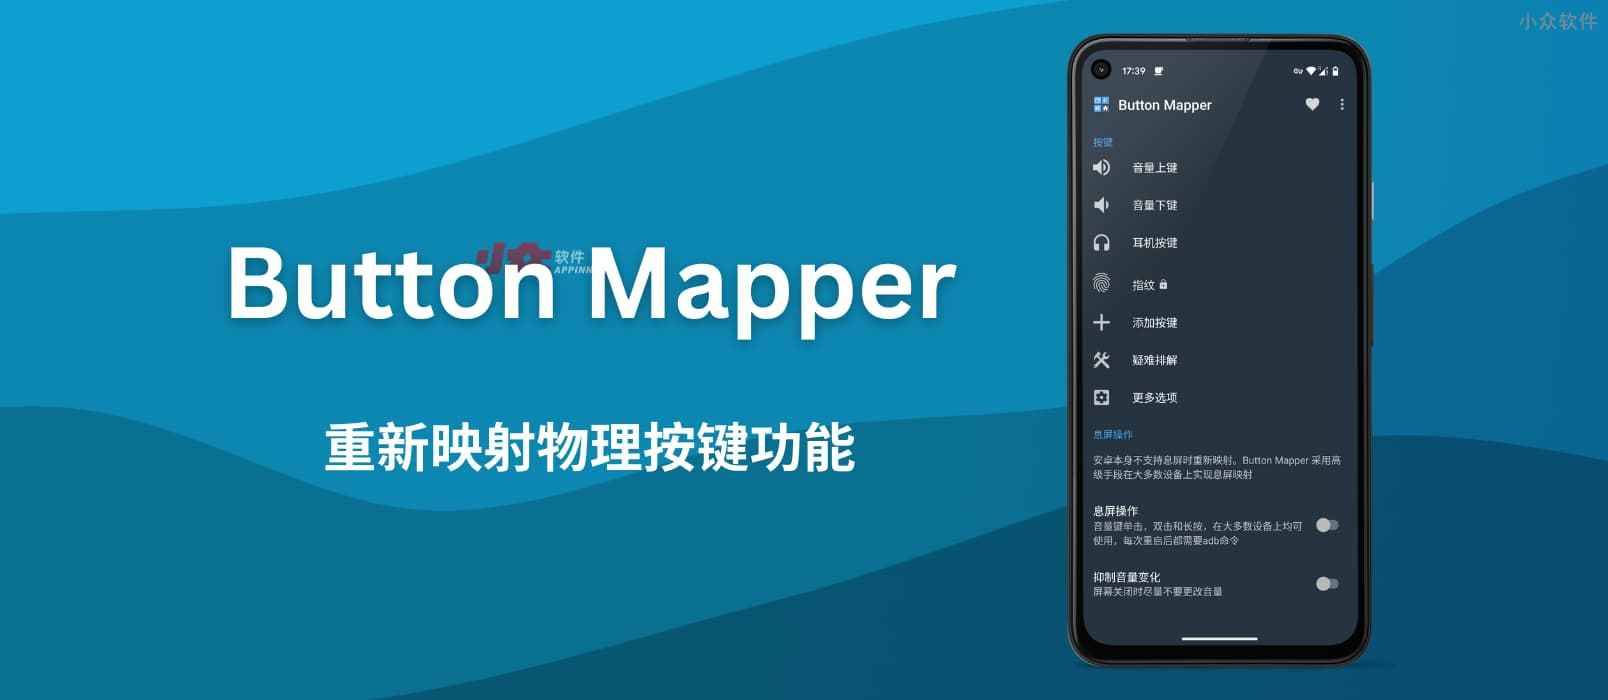 Button Mapper - 重新映射安卓手机音量+、音量- 的按键功能